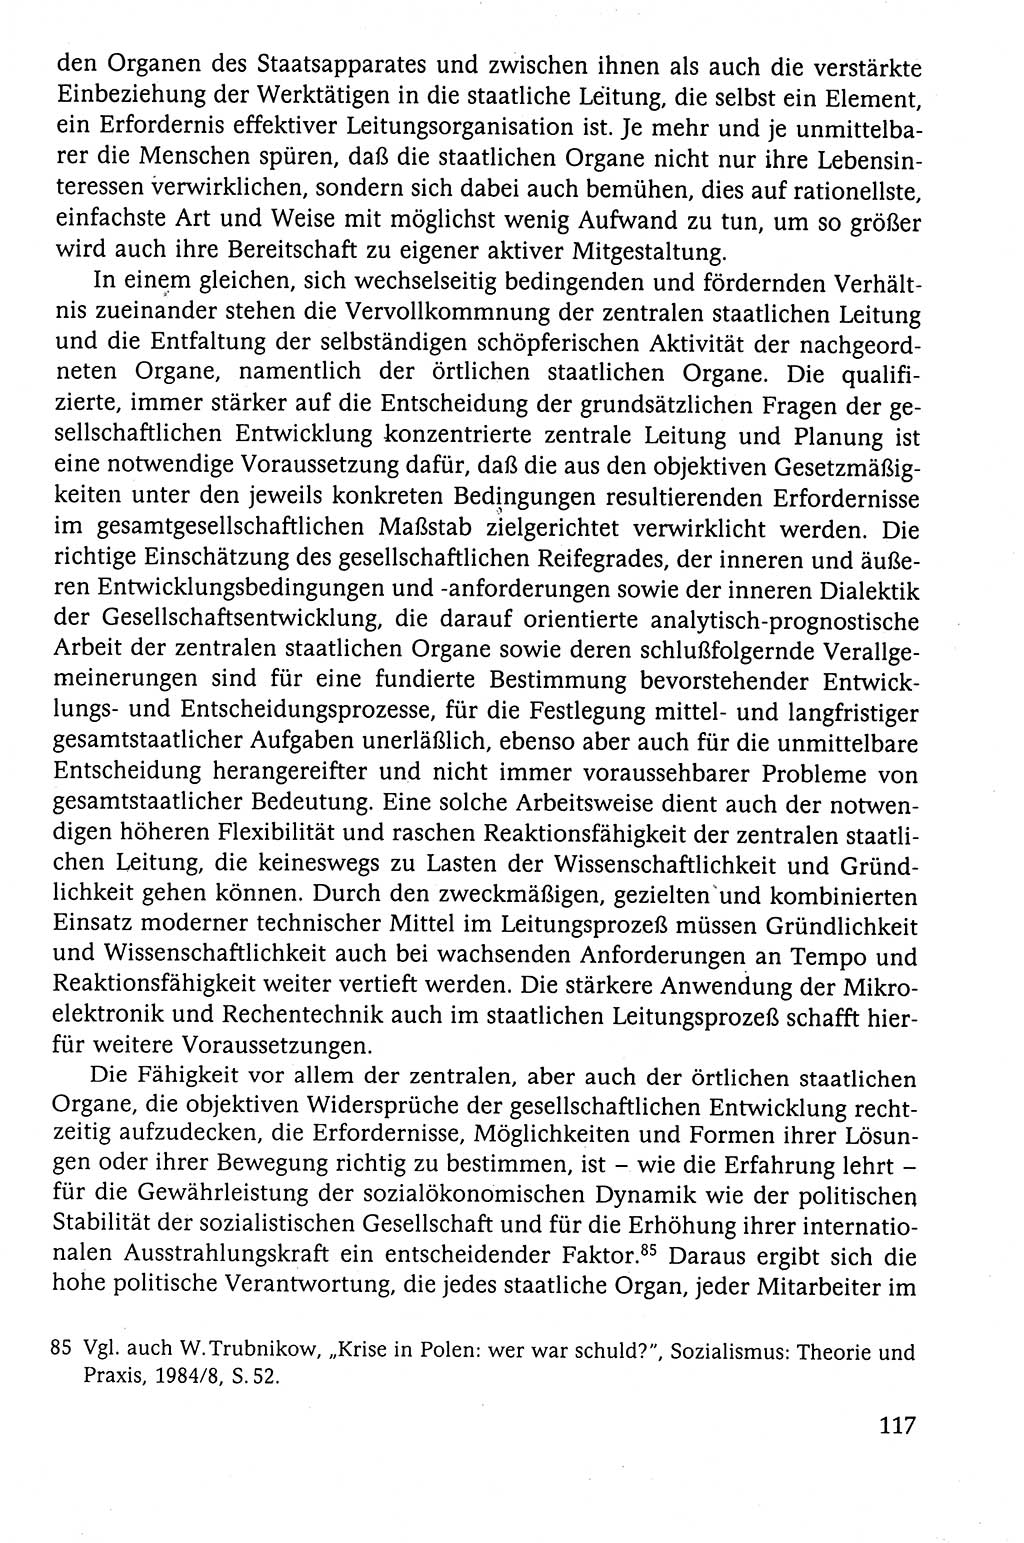 Der Staat im politischen System der DDR (Deutsche Demokratische Republik) 1986, Seite 117 (St. pol. Sys. DDR 1986, S. 117)